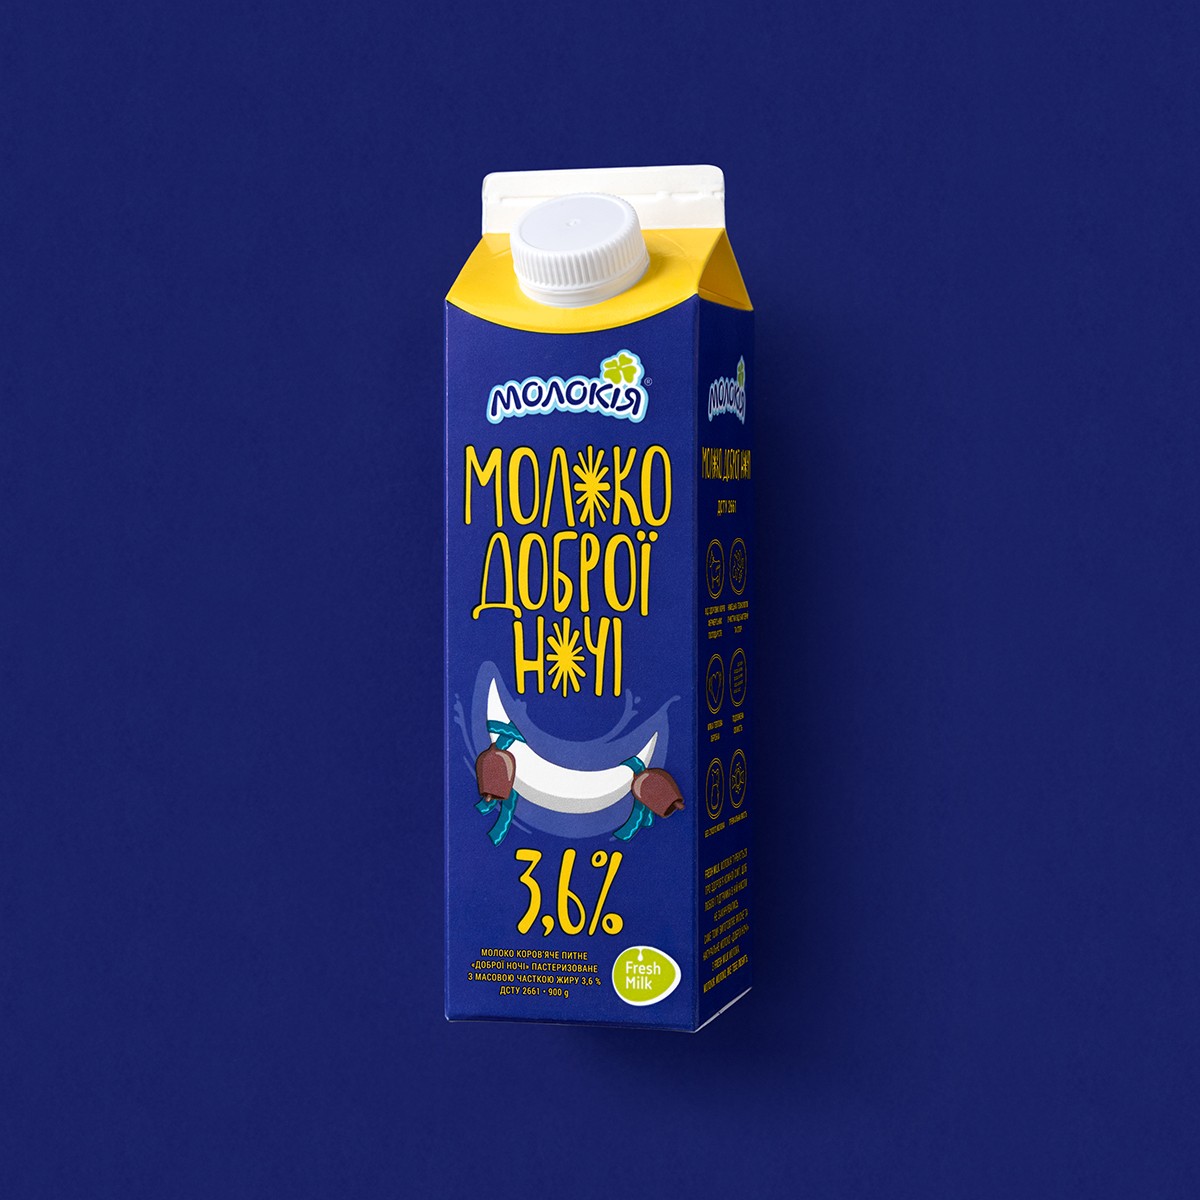 Innovative Good Night Milk Packaging Design